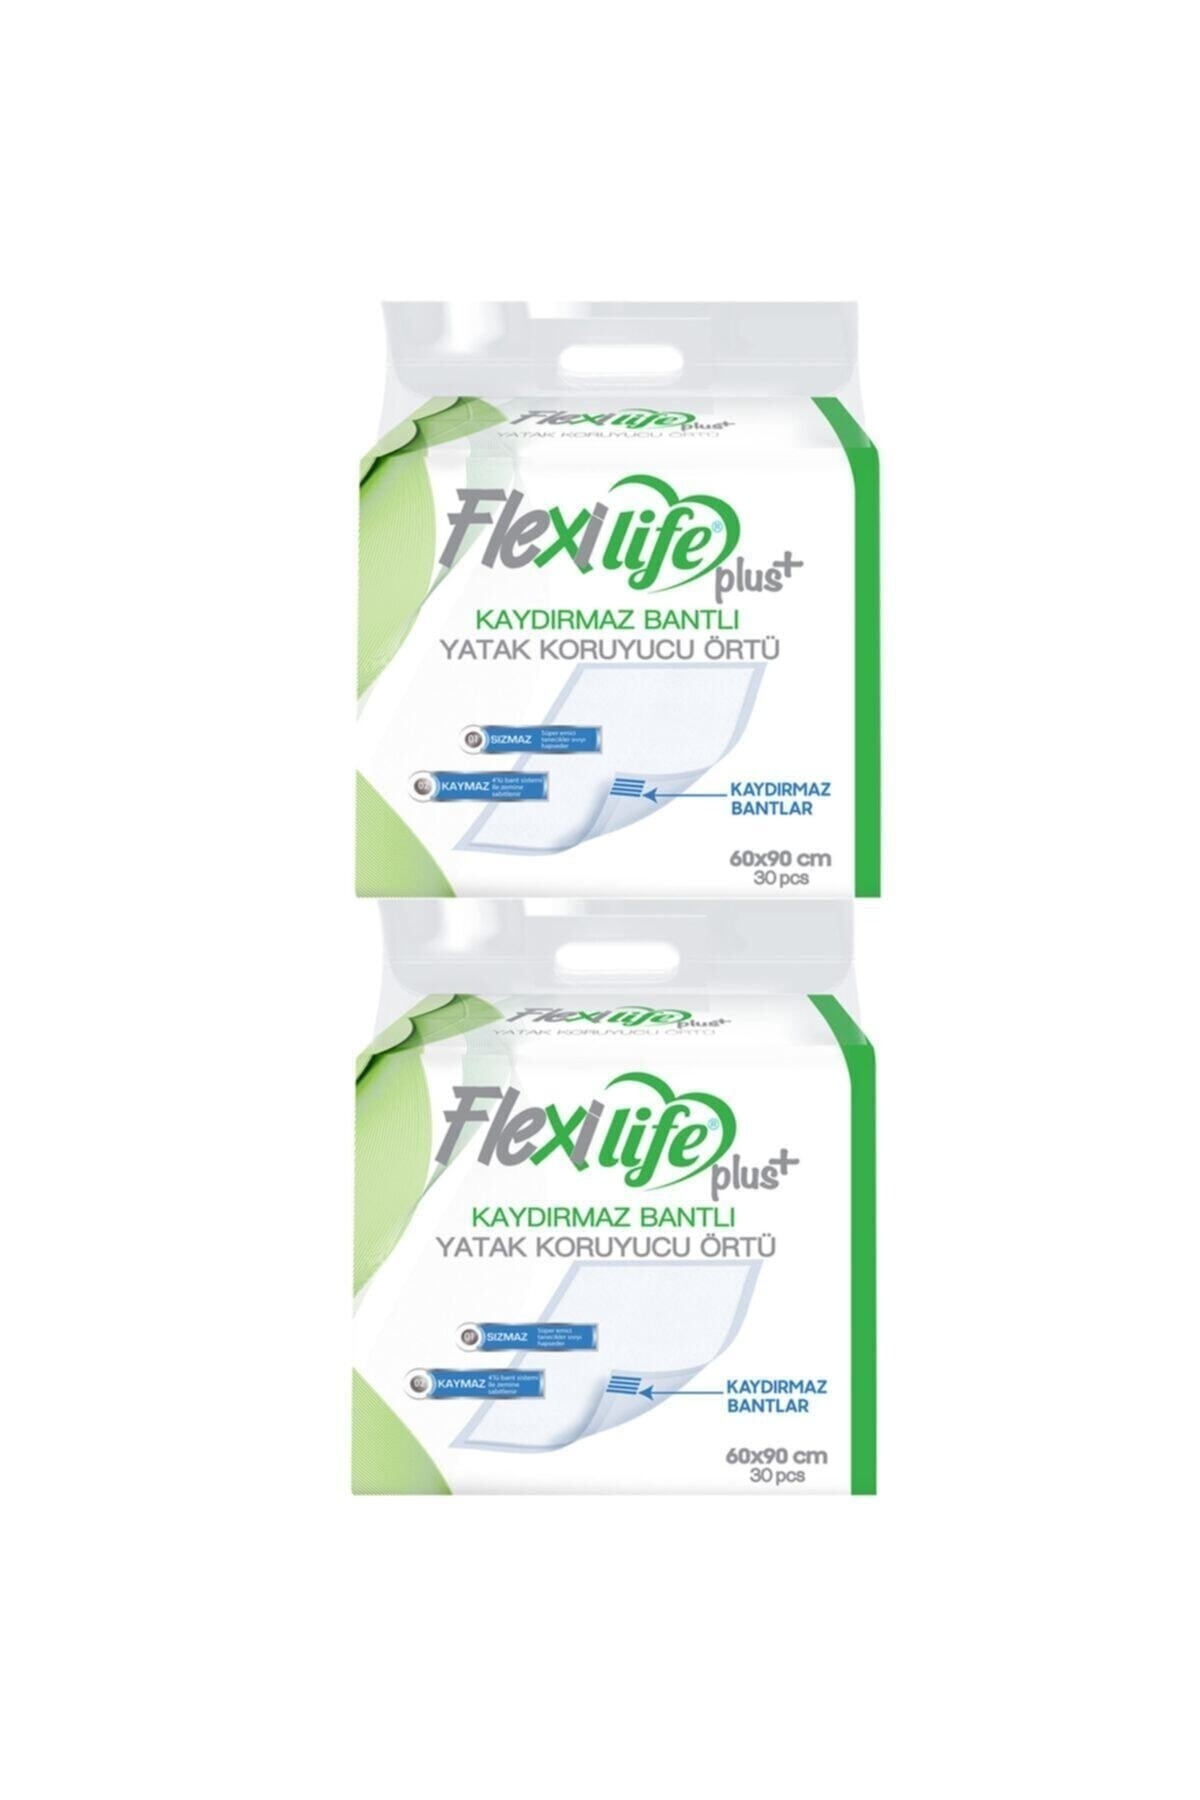 Flexi Life Flexilife Hasta Altı Bezi Kaydırmaz Bantlı Yatak Koruyucu Örtü 60x90 Cm 30 Lu 2 Paket